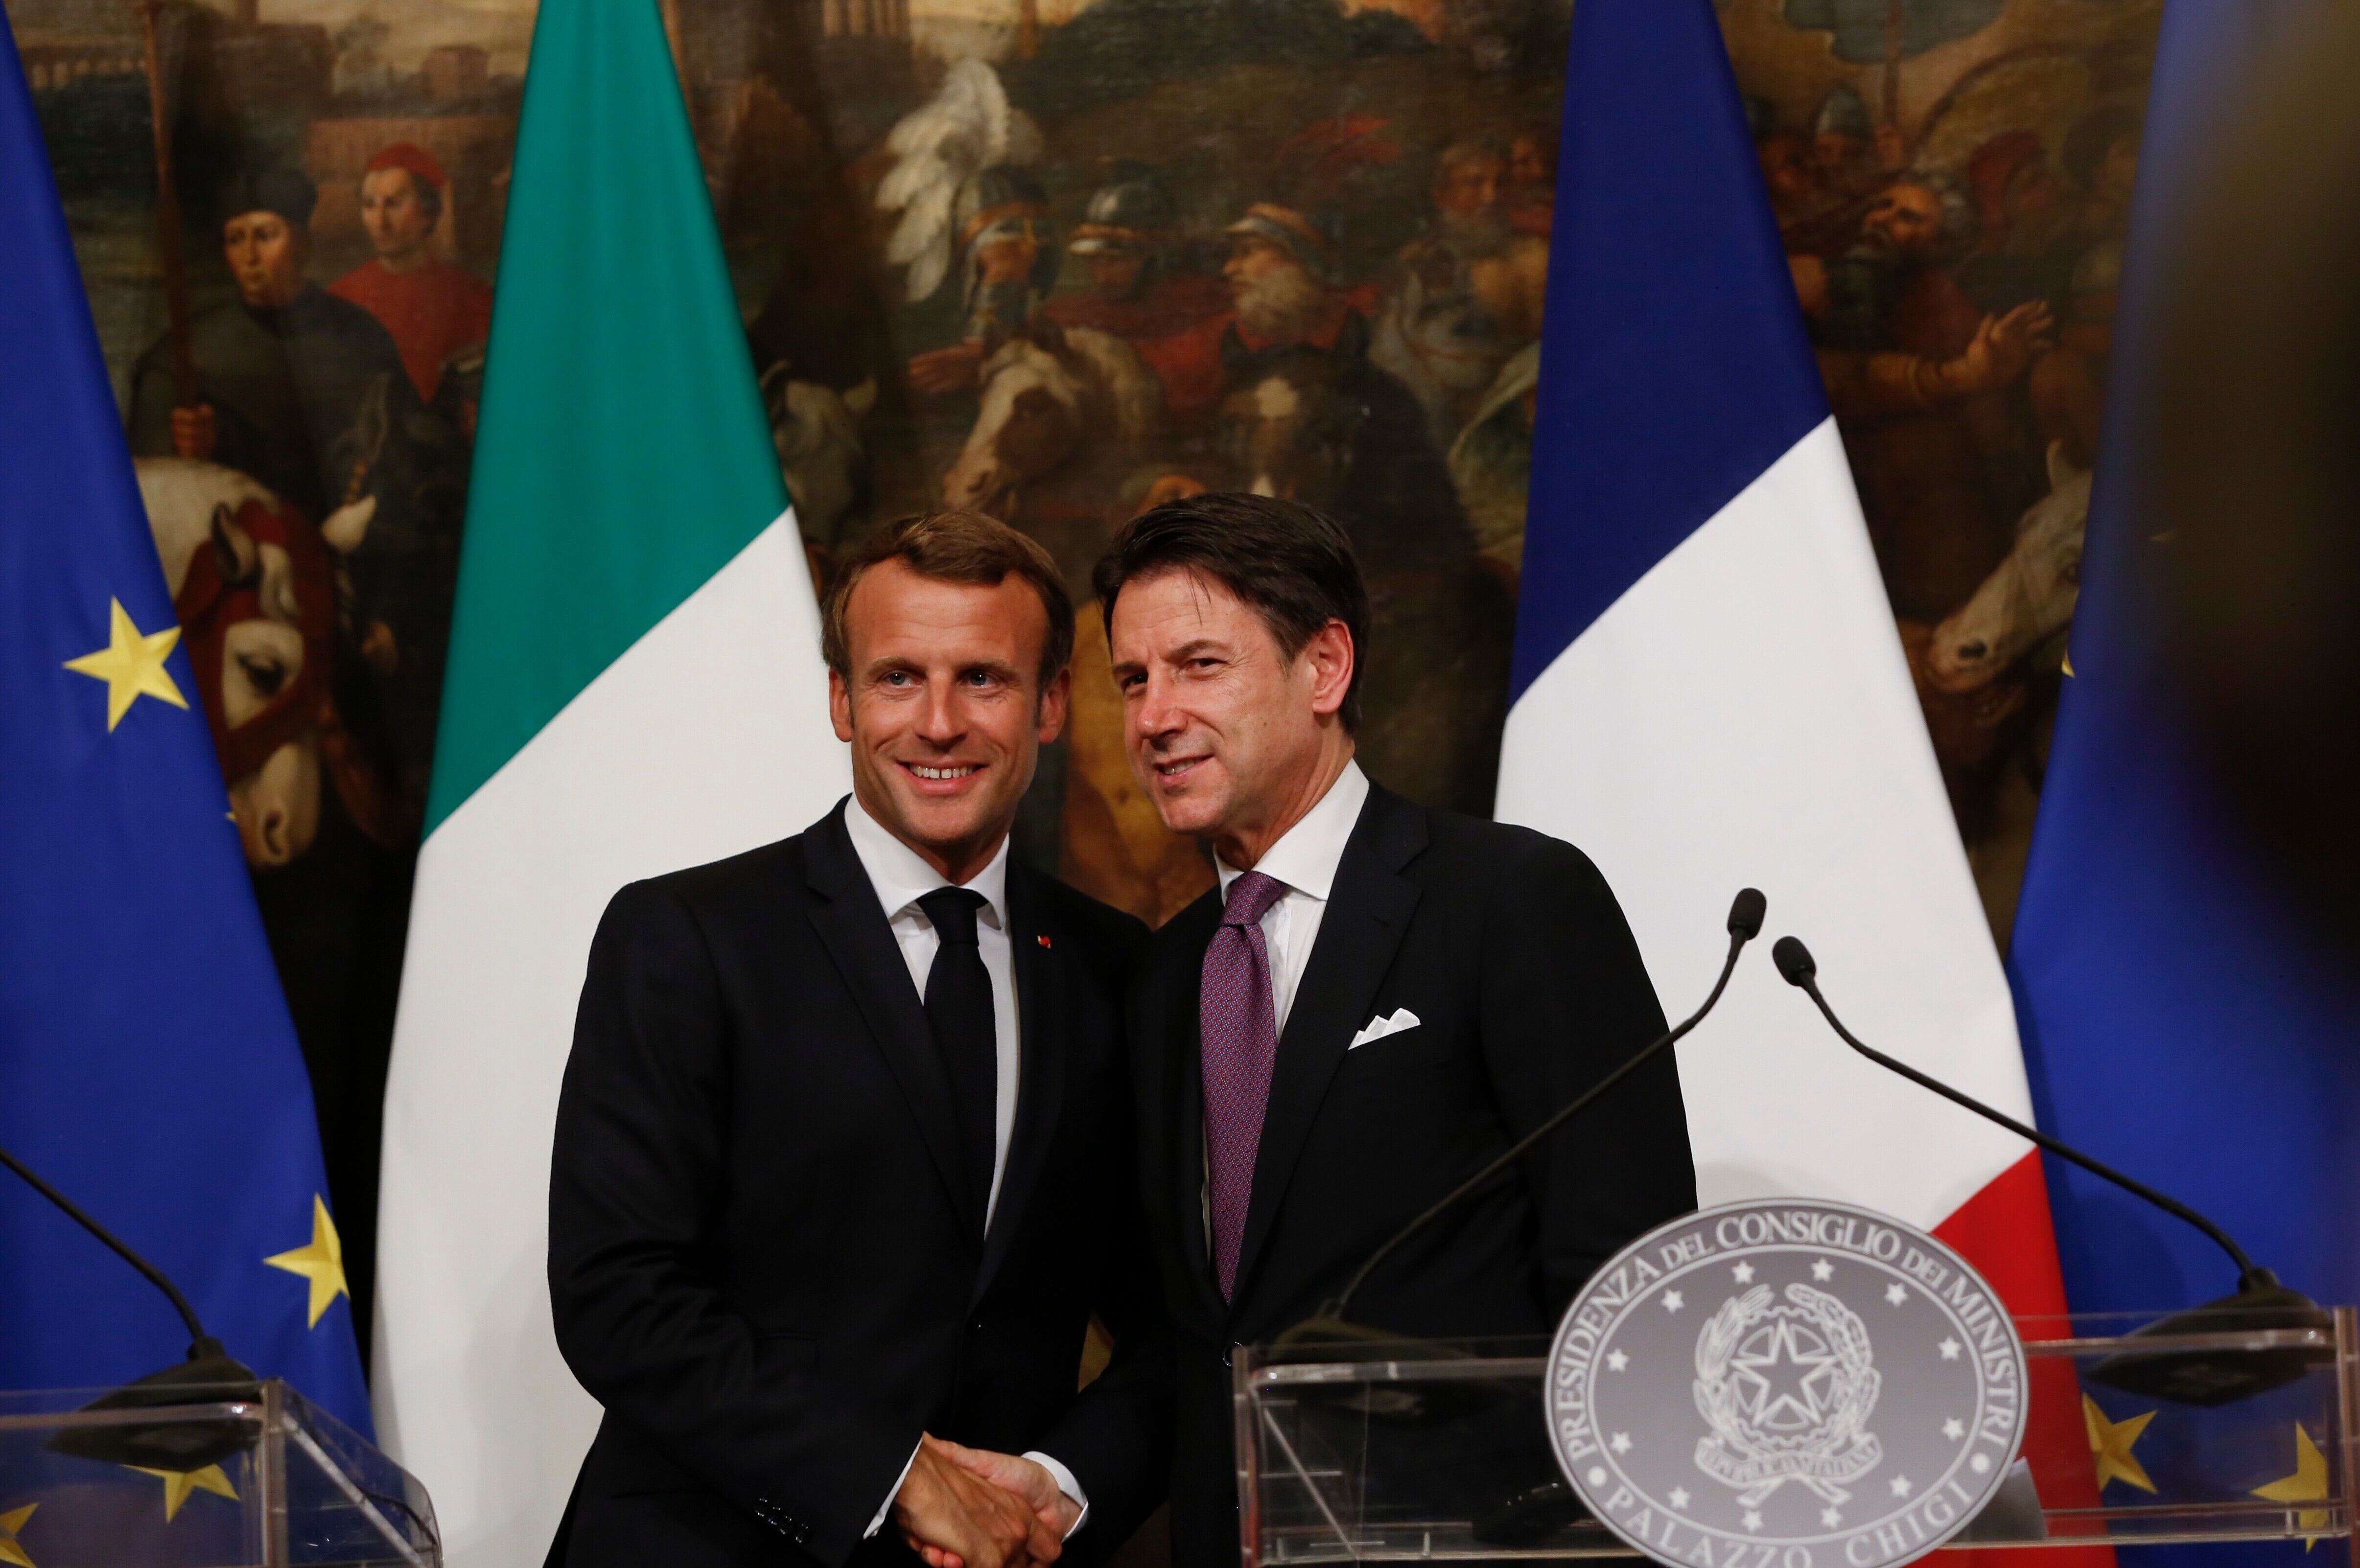 Emmanuel Macron et Giuseppe Conte, chef du gouvernement italien, photographiés avant le confinement.